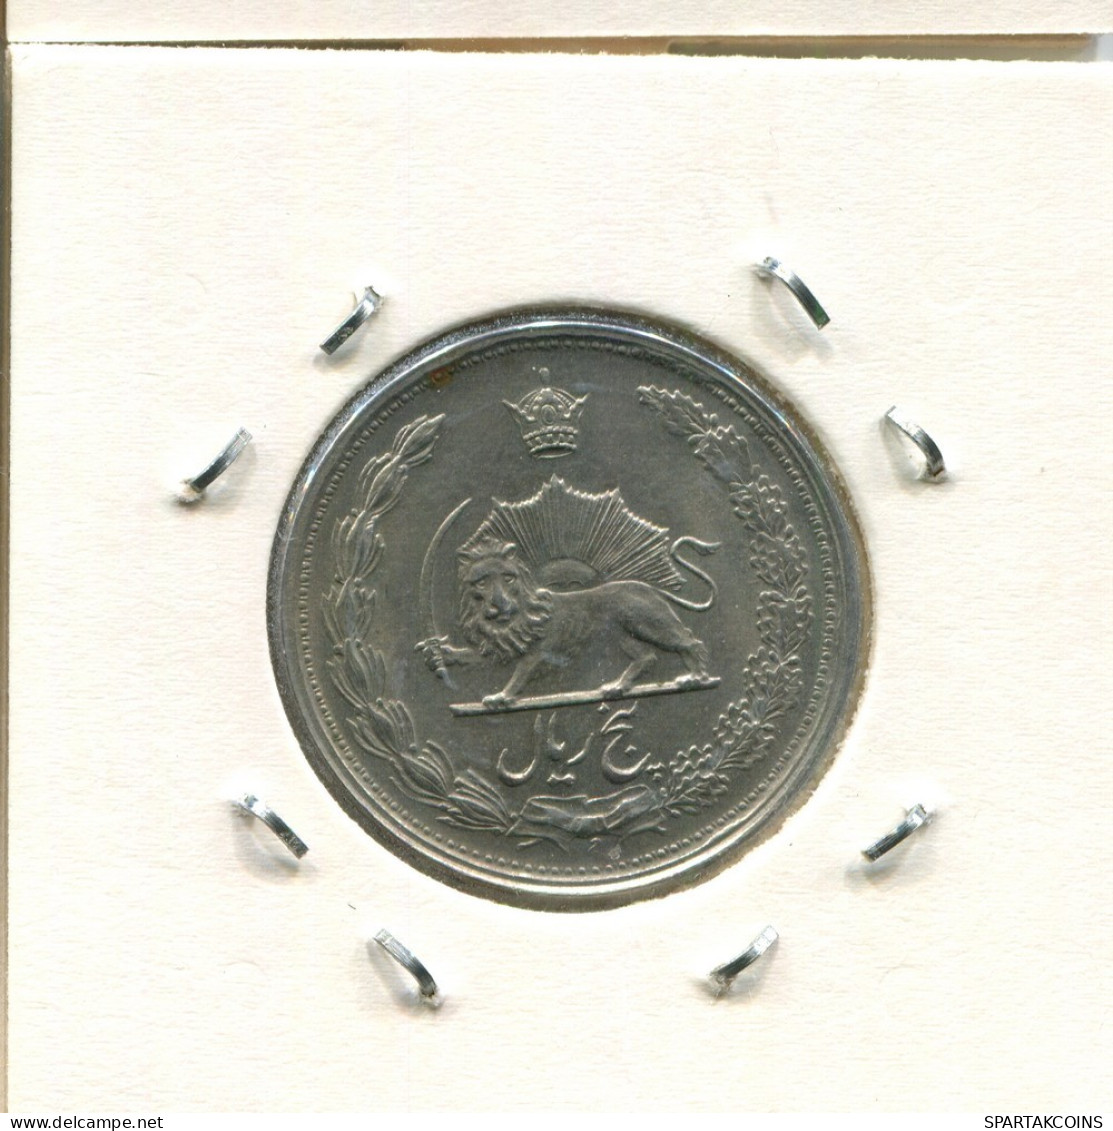 IRAN 5 RIALS 1962 / 1341 ISLAMIC COIN #AS101.U.A - Irán